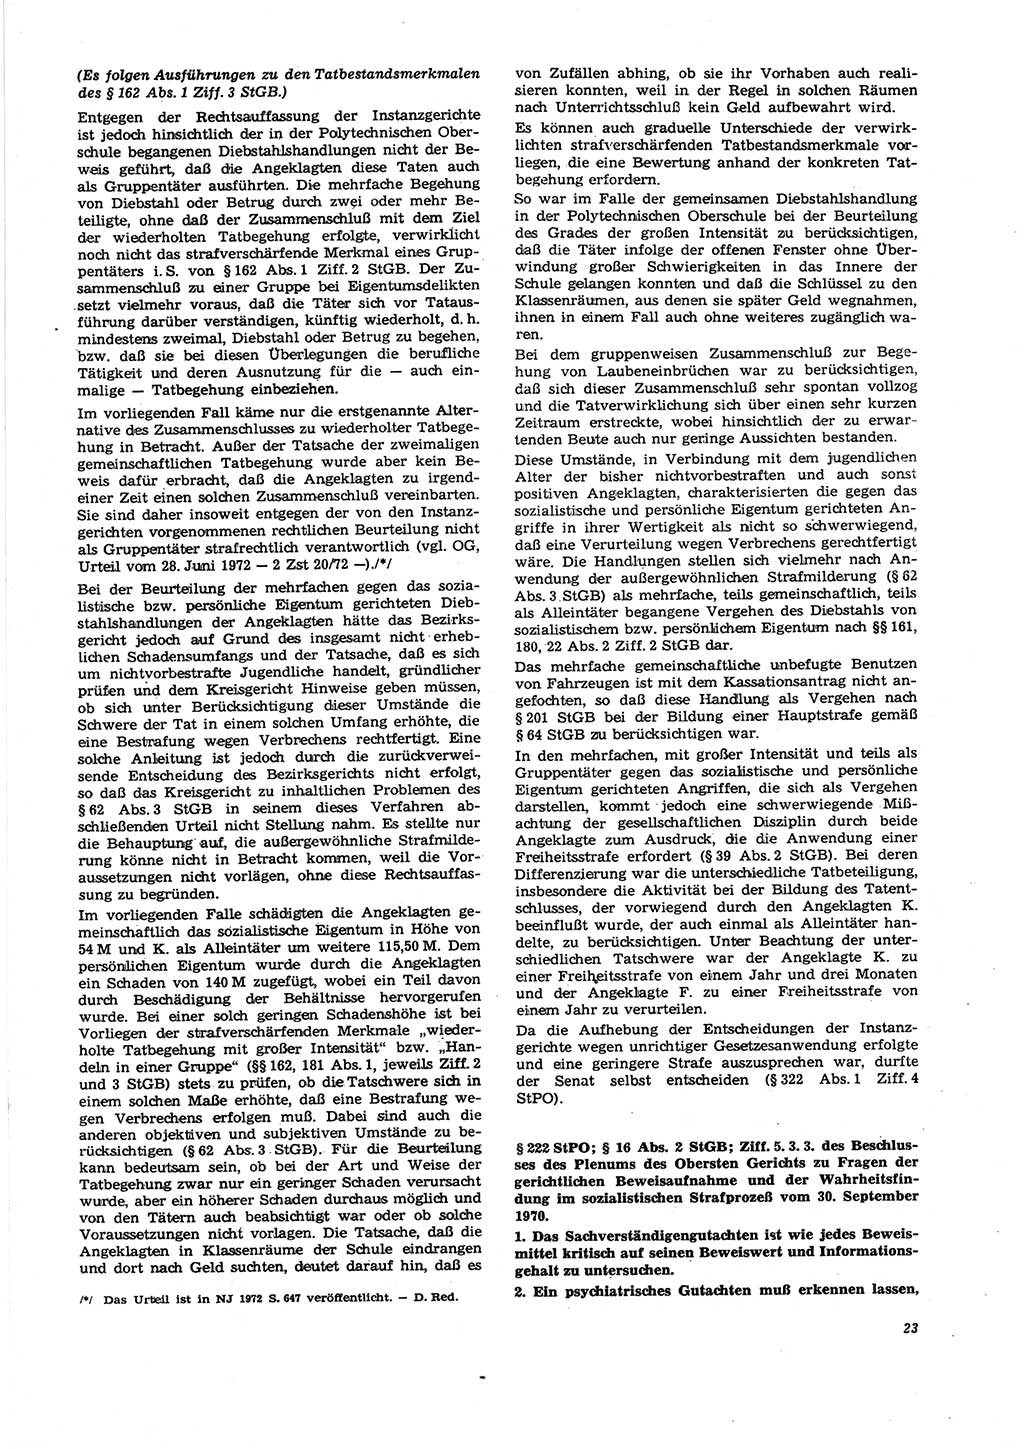 Neue Justiz (NJ), Zeitschrift für Recht und Rechtswissenschaft [Deutsche Demokratische Republik (DDR)], 27. Jahrgang 1973, Seite 23 (NJ DDR 1973, S. 23)